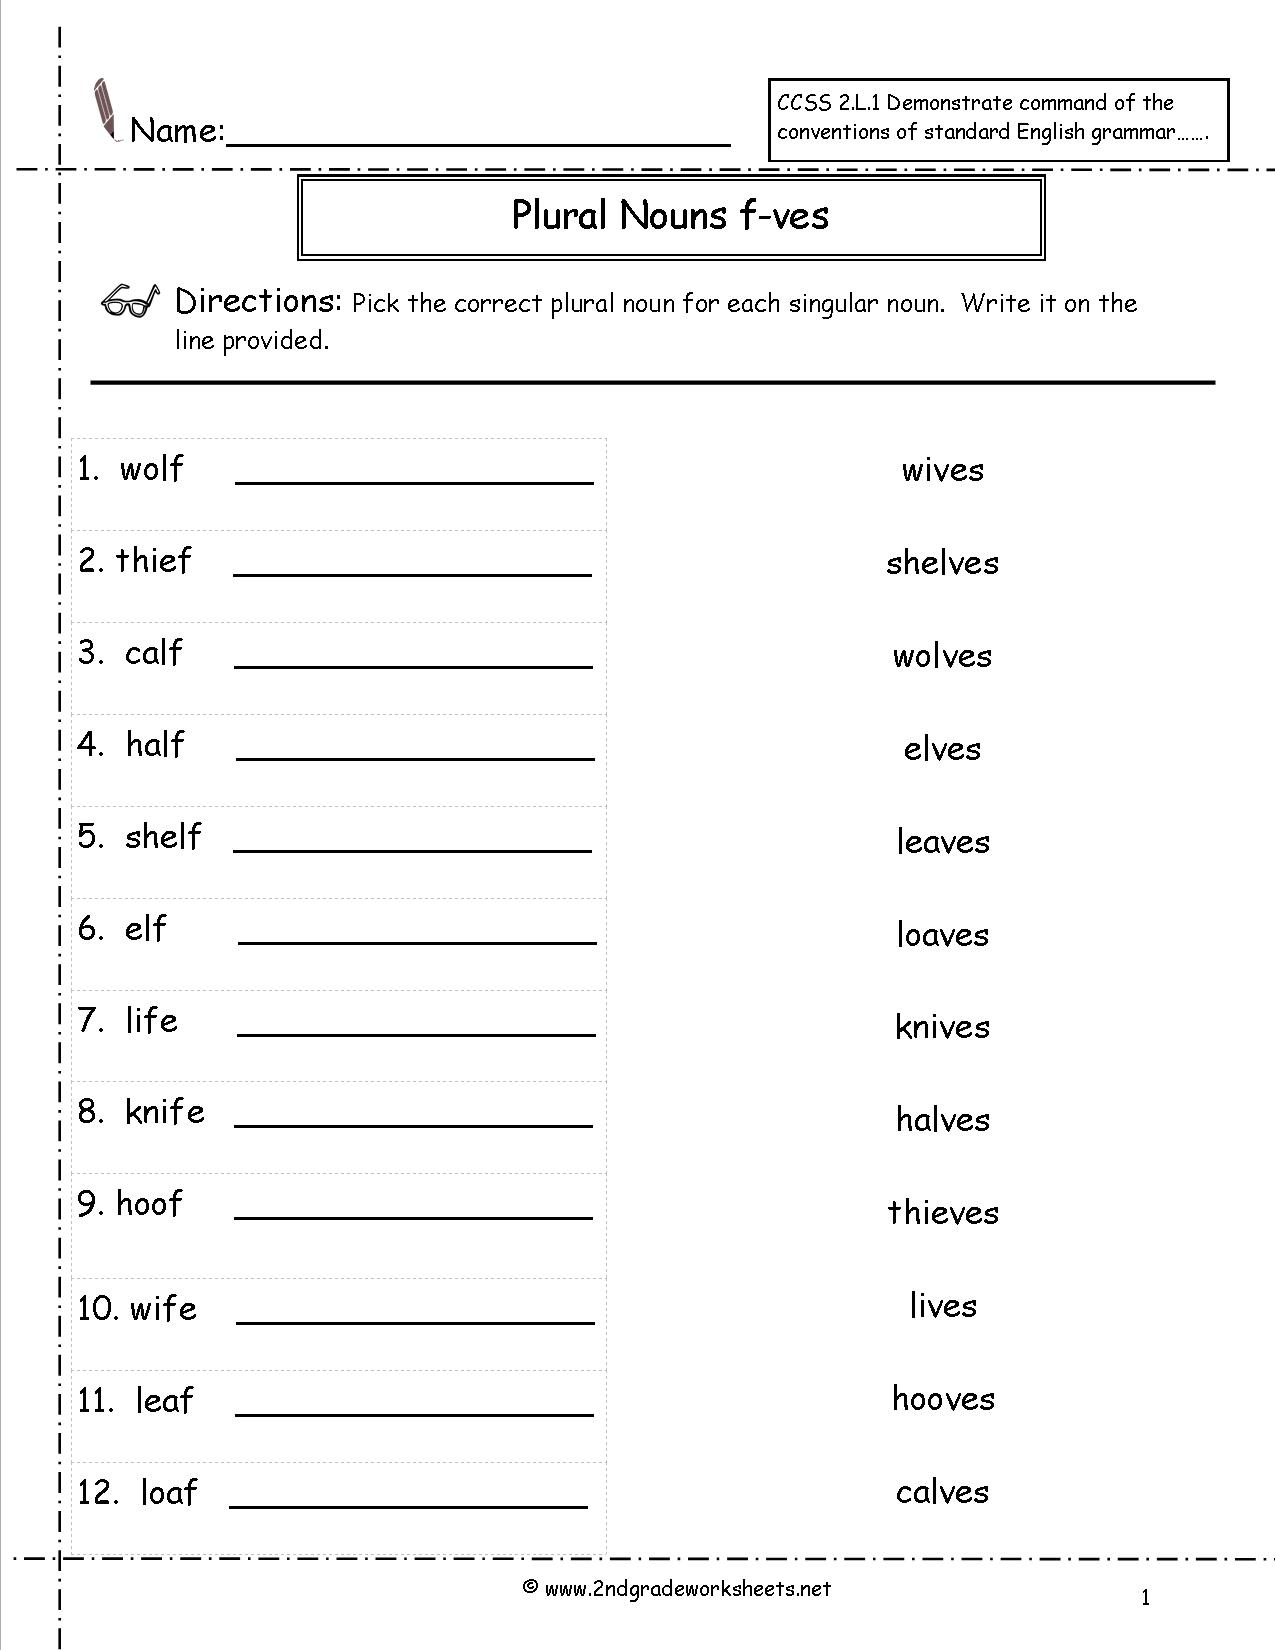 noun-sorting-worksheet-have-fun-teaching-nouns-worksheet-carr-francis